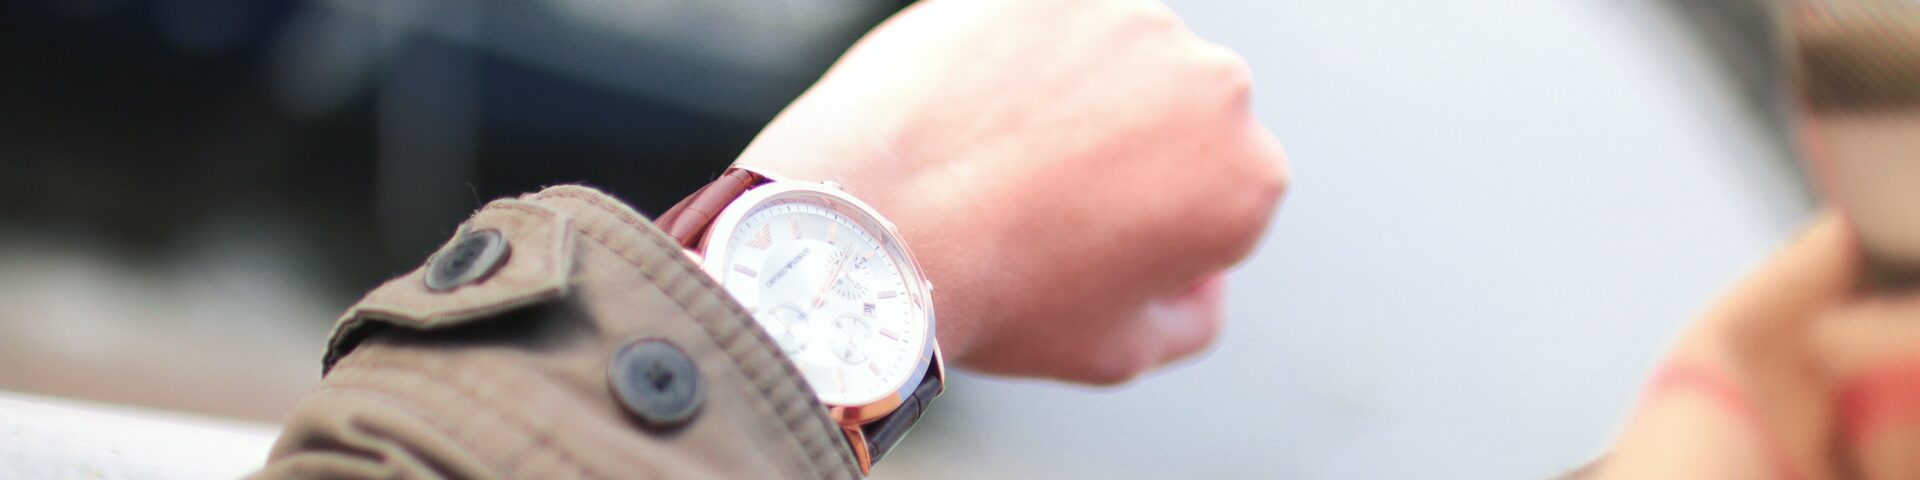 Horloge aan arm van man, als illustratie bij artikel over shoppen met je pensioenkapitaal last-minute